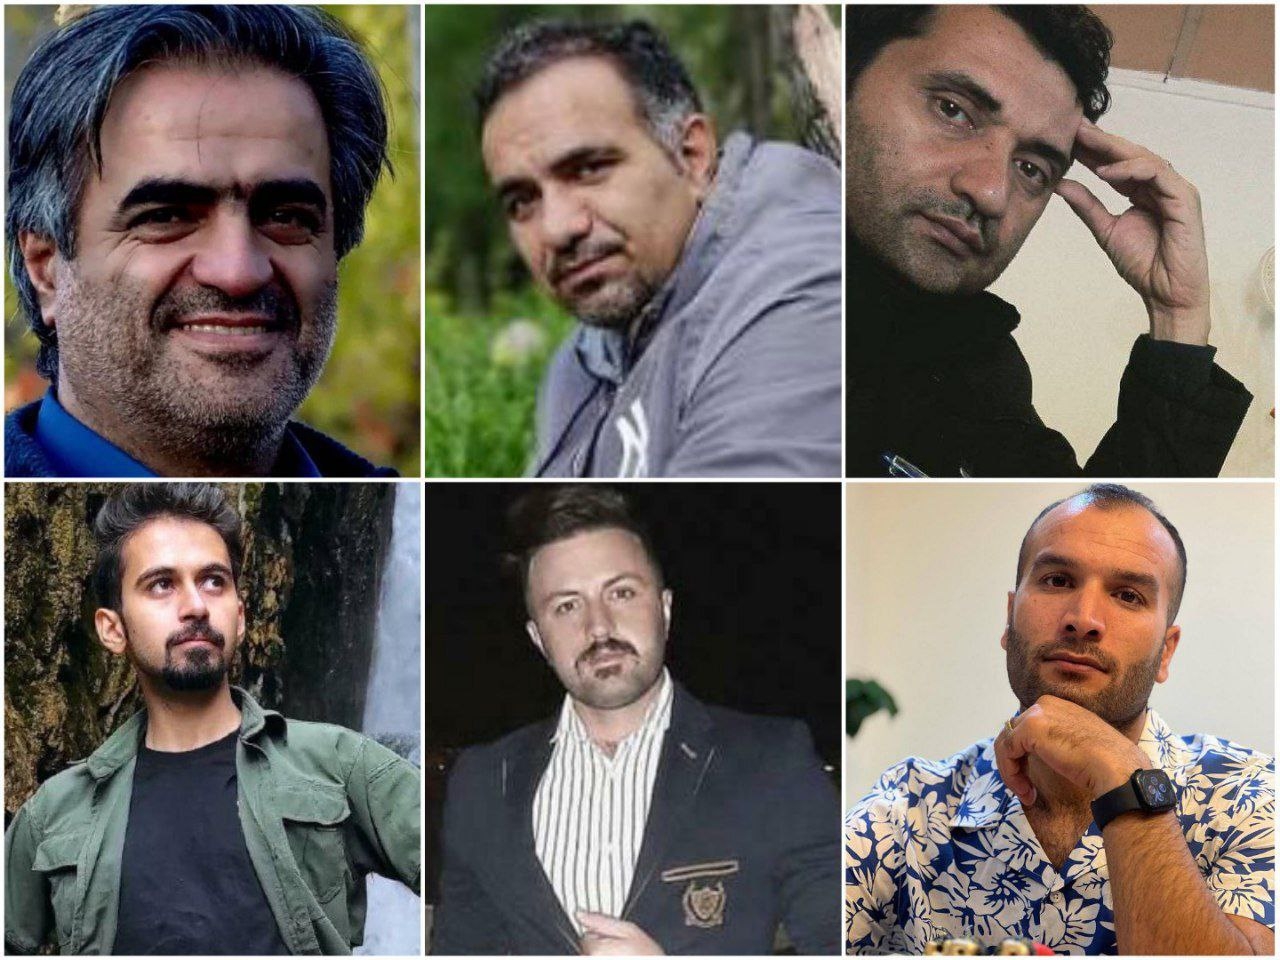 احراز هویت دوتن دیگر از بازداشت شدگان تبریز؛ امیرحسین آقایی و محمدرضا موحد بازداشت شدند